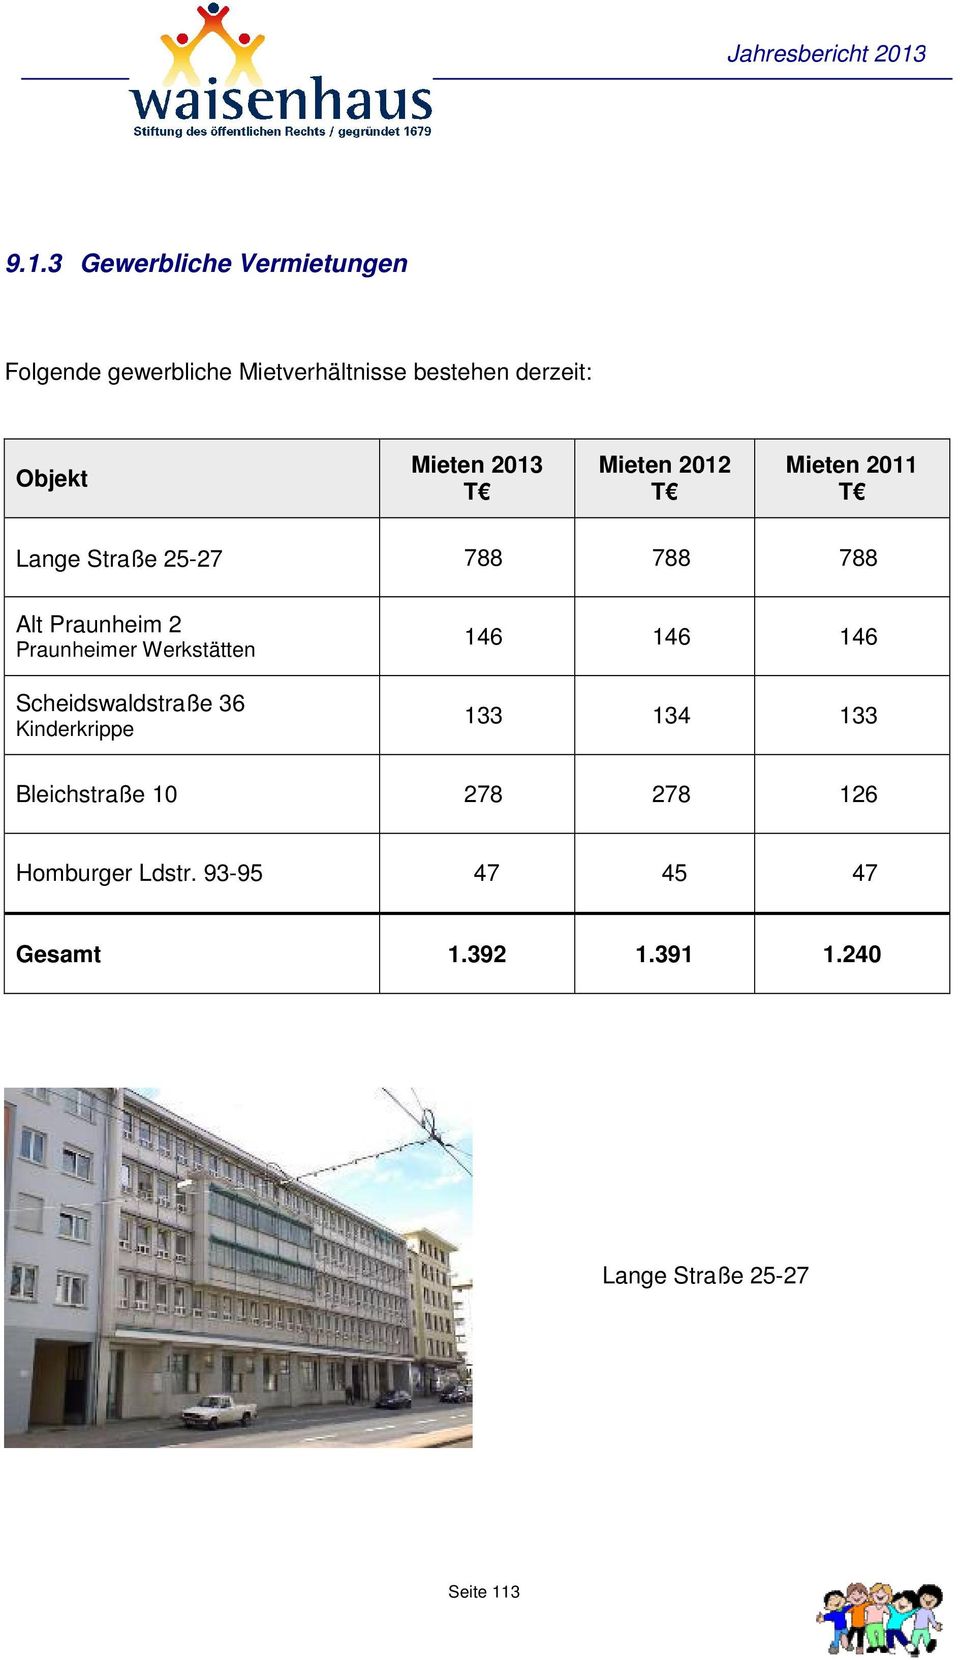 Praunheimer Werkstätten Scheidswaldstraße 36 Kinderkrippe 146 146 146 133 134 133